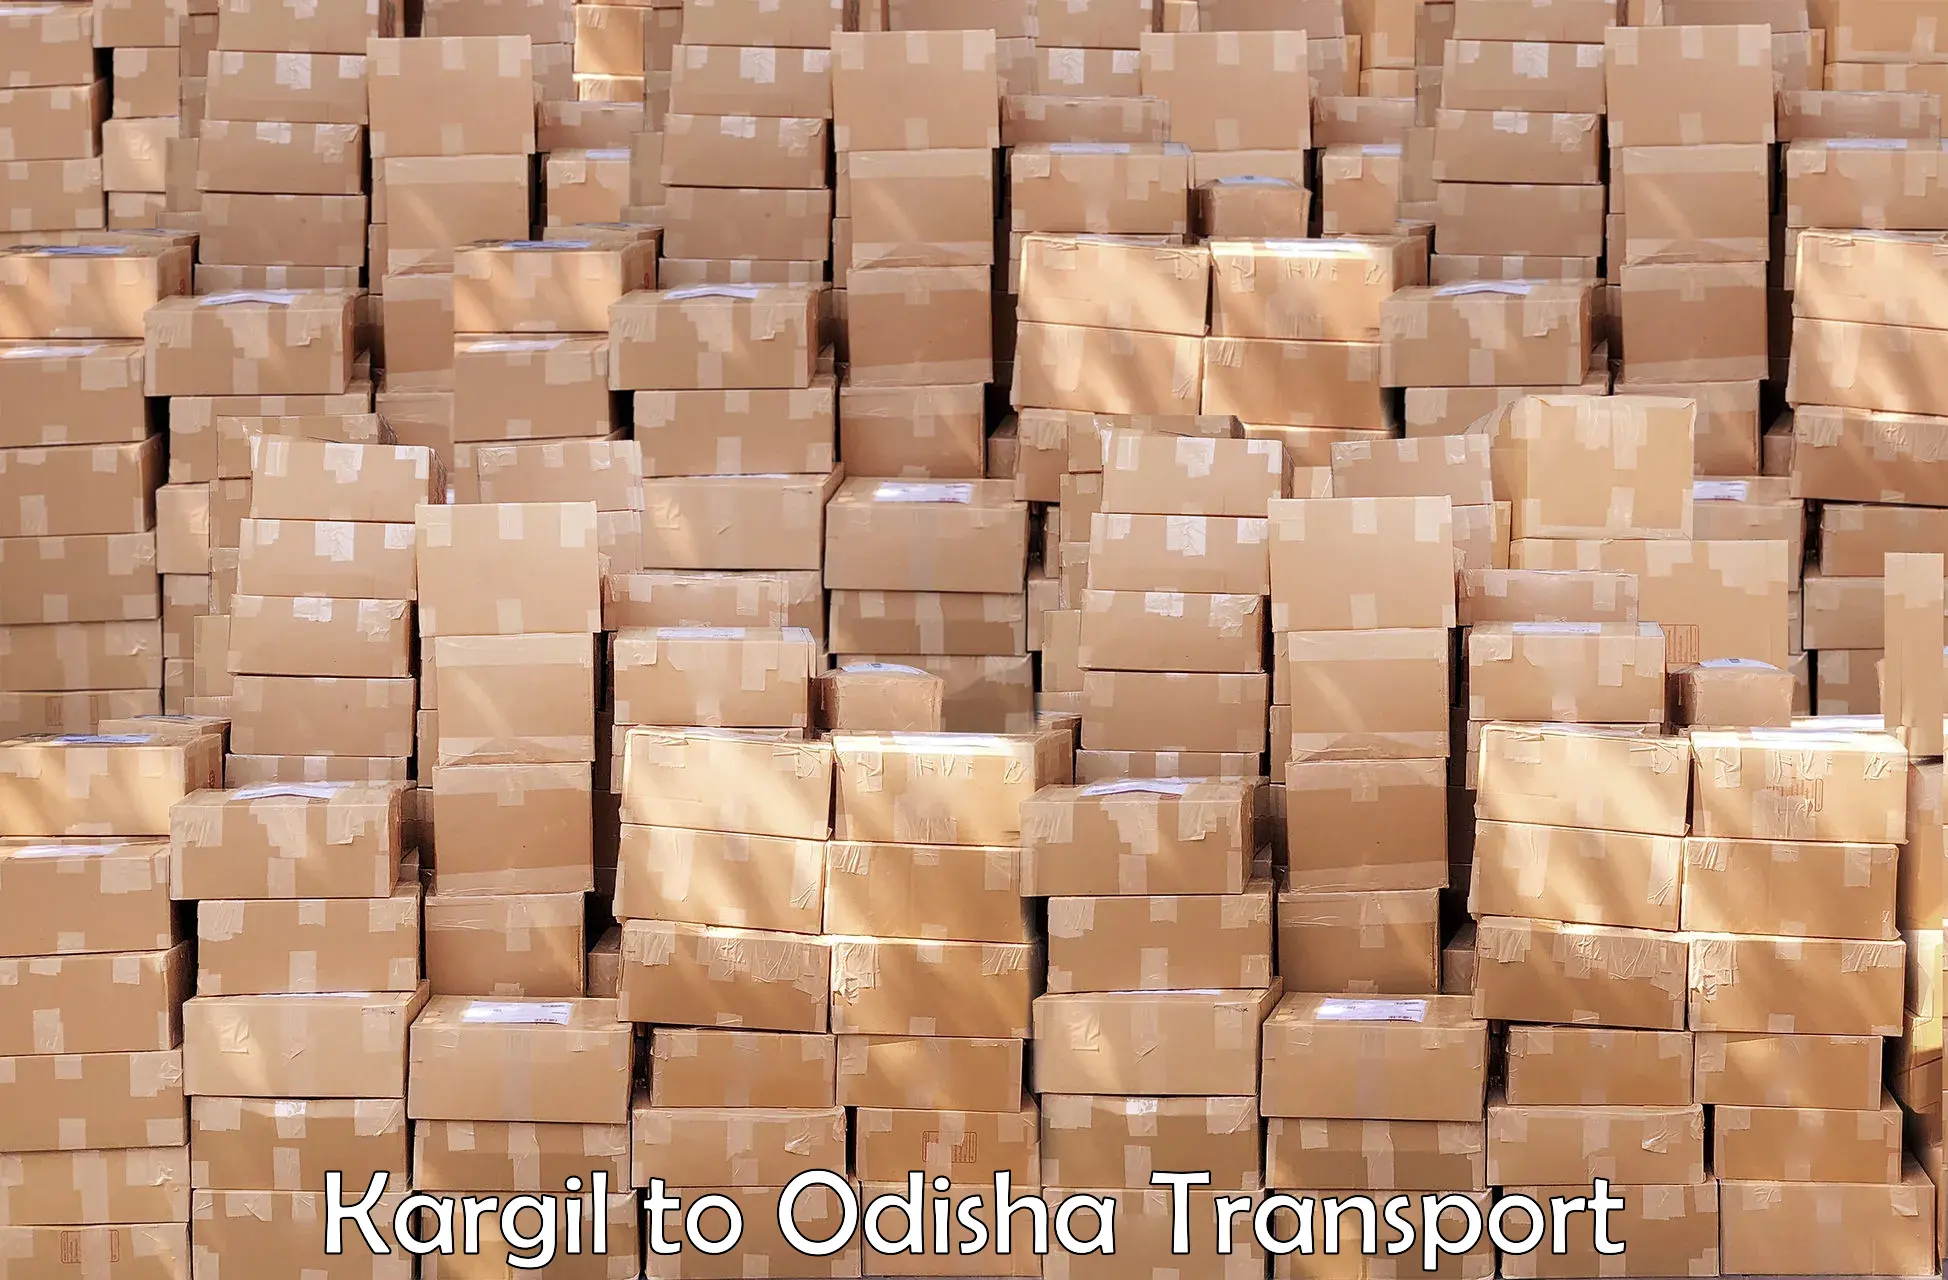 Delivery service Kargil to Dandisahi